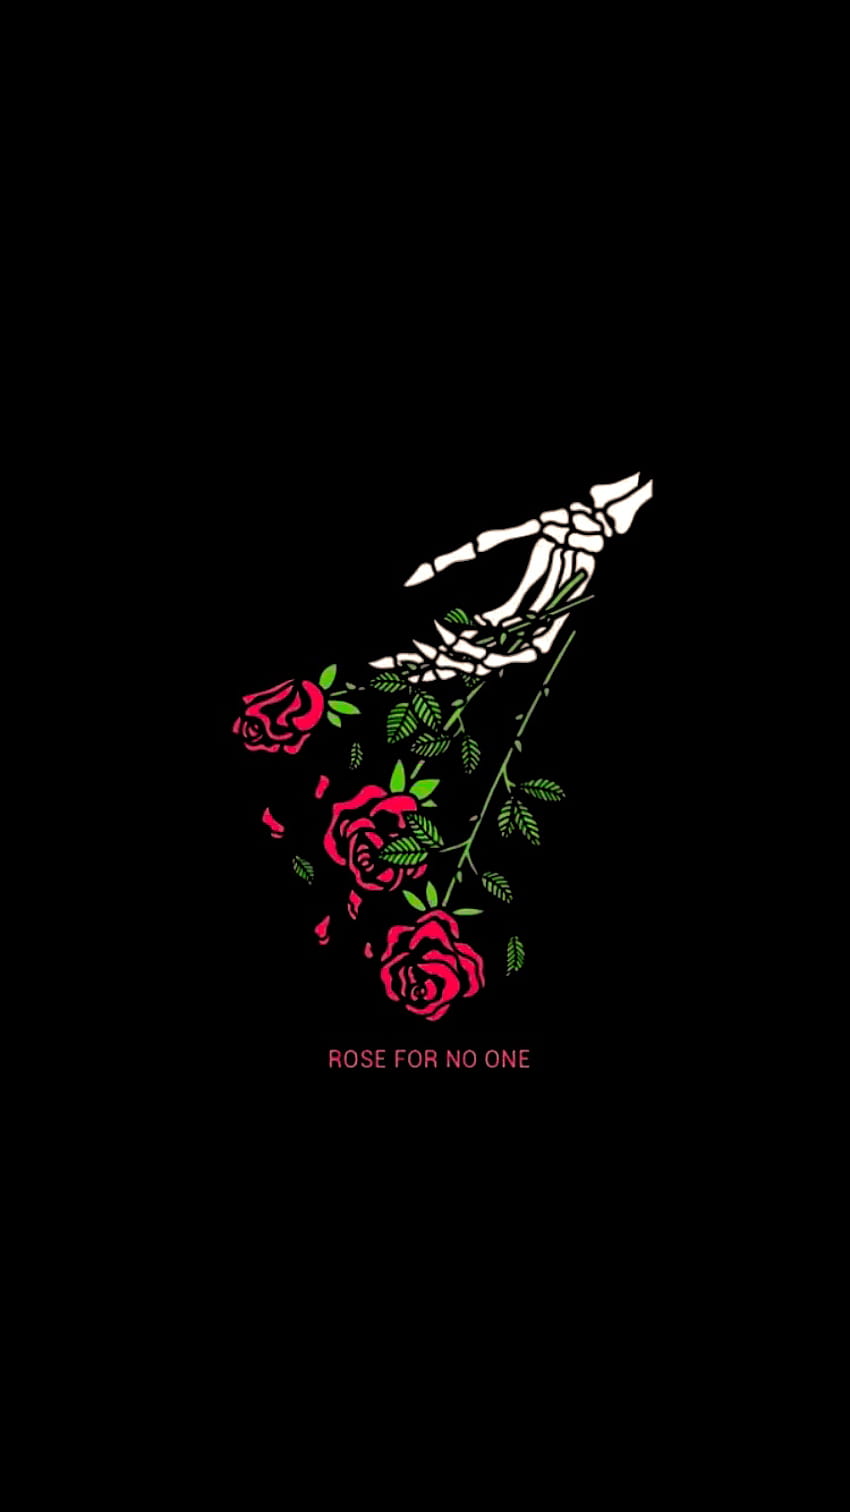 Hoa hồng đen là loài hoa độc đáo và quyến rũ. Với sắc đen tuyền, chúng có thể tạo ra một vẻ đẹp đầy bí ẩn và cuốn hút. Hãy chiêm ngưỡng hình ảnh của hoa hồng đen để cảm nhận được sự đặc biệt của chúng.